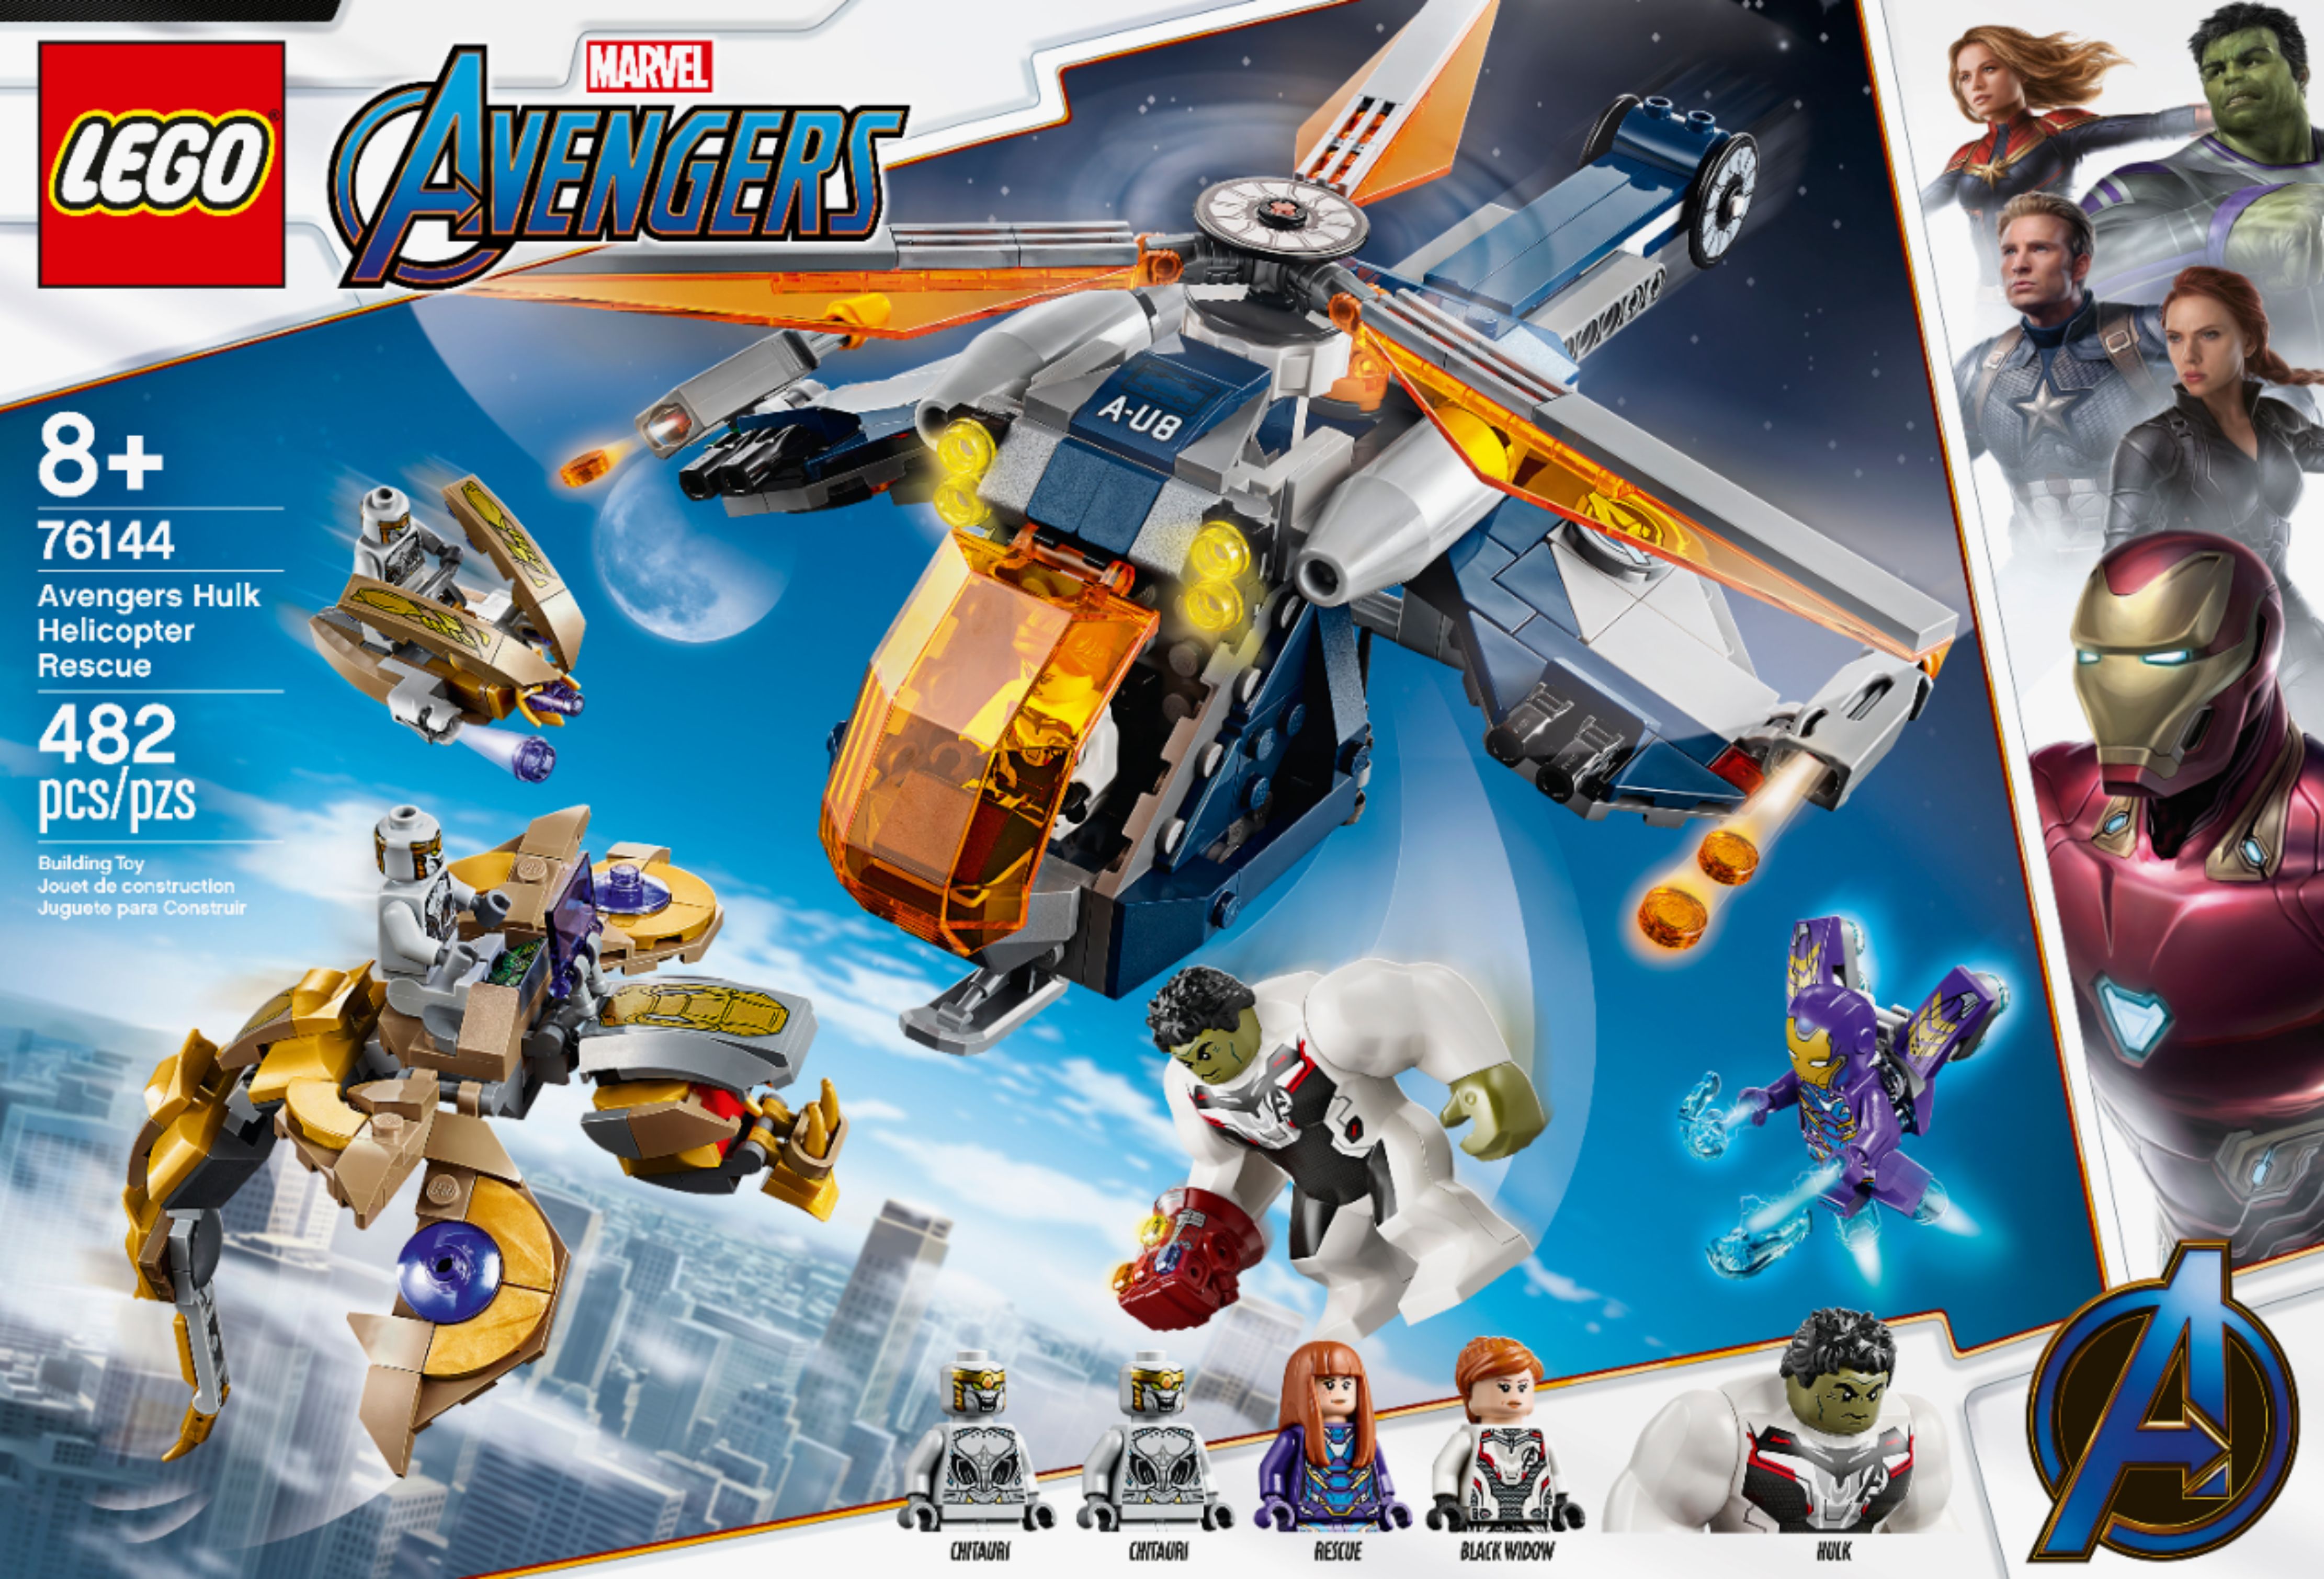 Avengers Hulk Helicopter Rescue 76144, Marvel